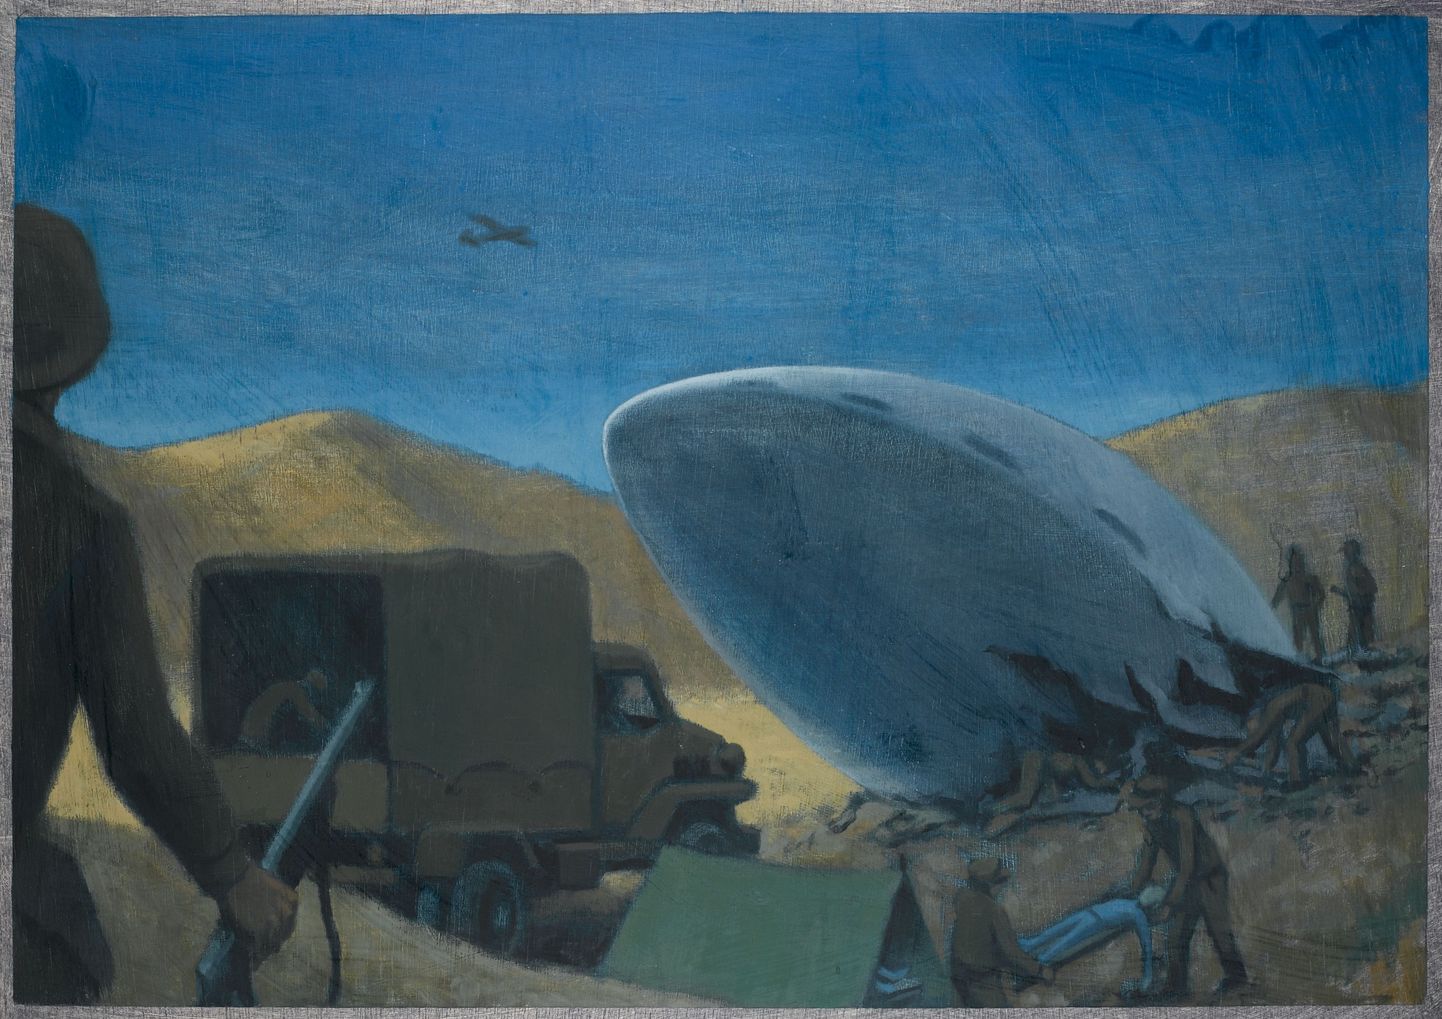 Kunstniku kujutis vandenõuteooriast, mille kohaselt USA armee leidis Roswellis maandunud tulnukate jäänuseid ja üritas neid peita.